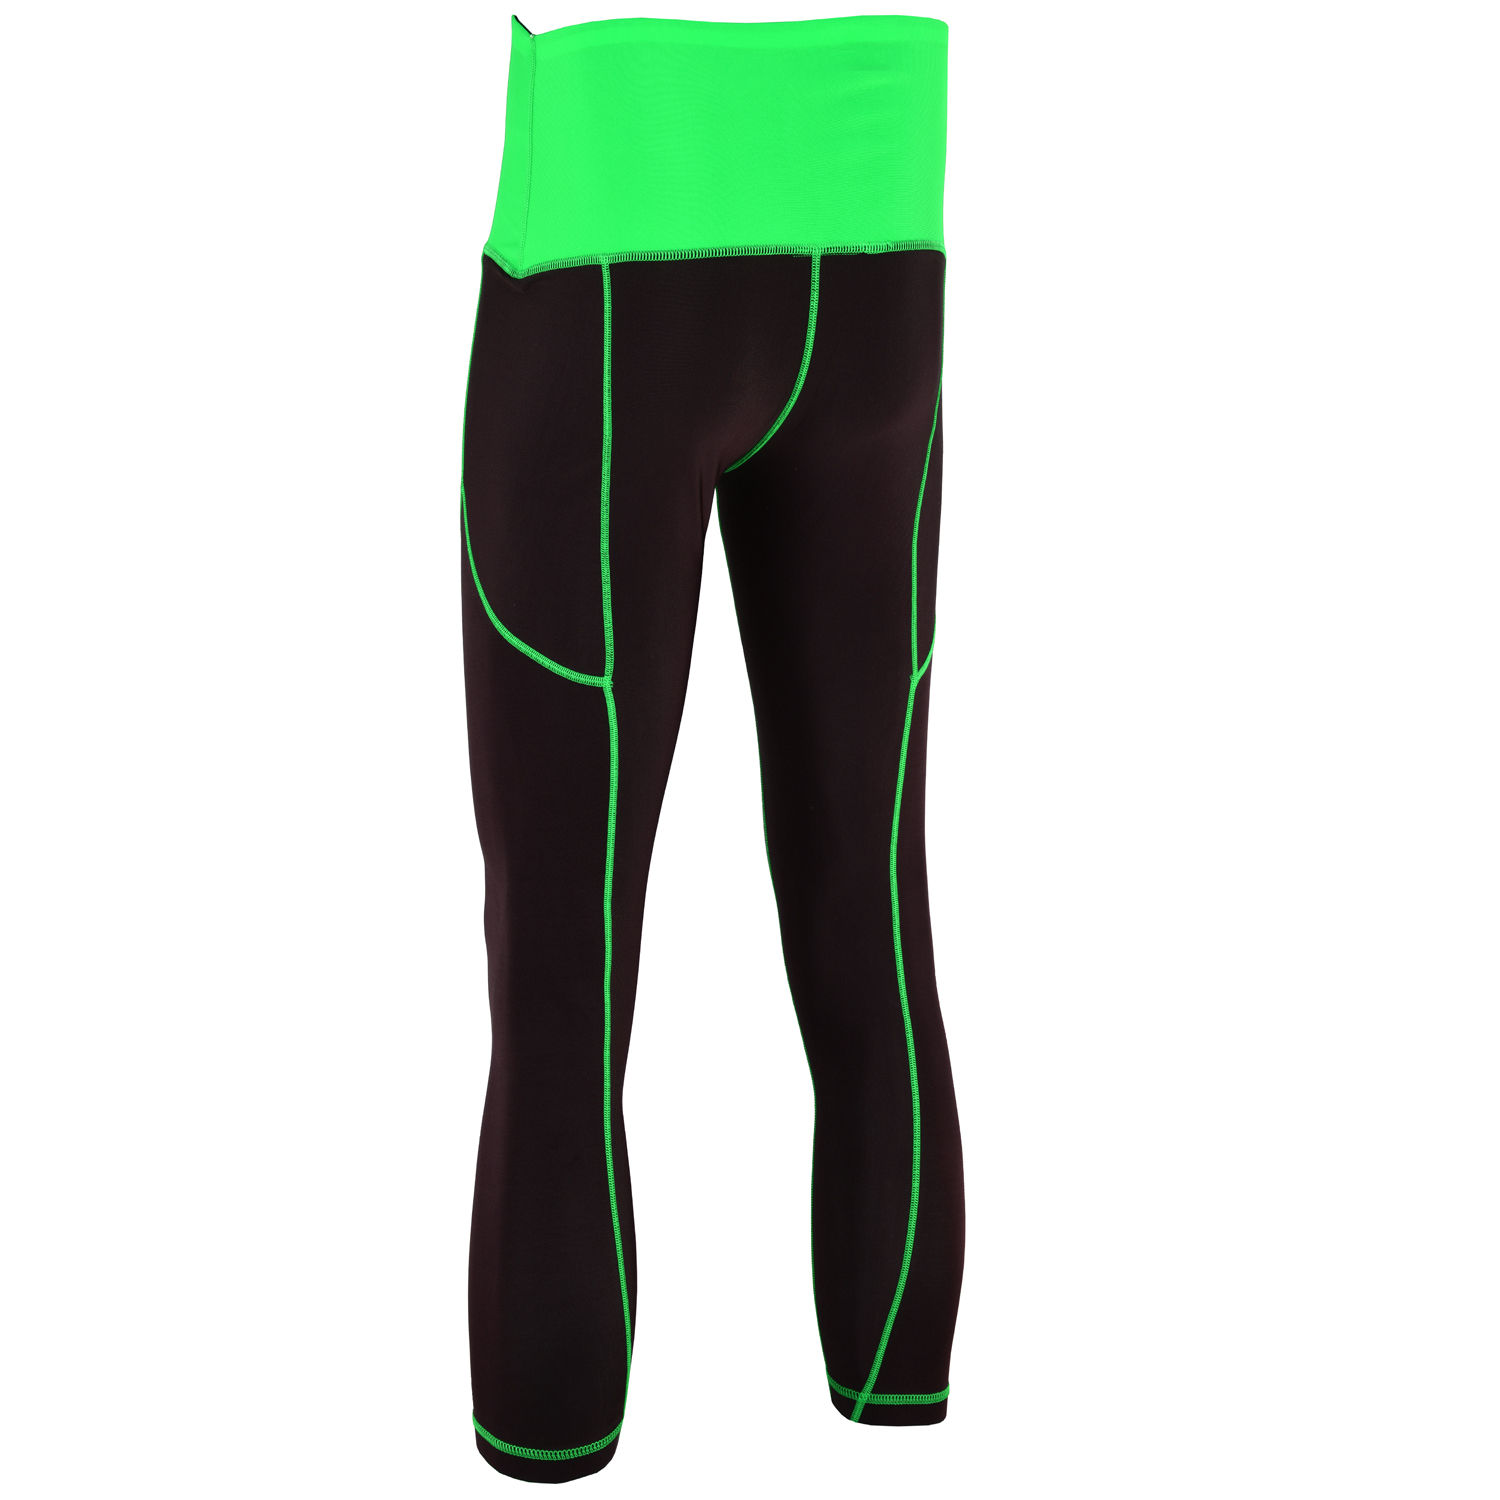 green workout leggings